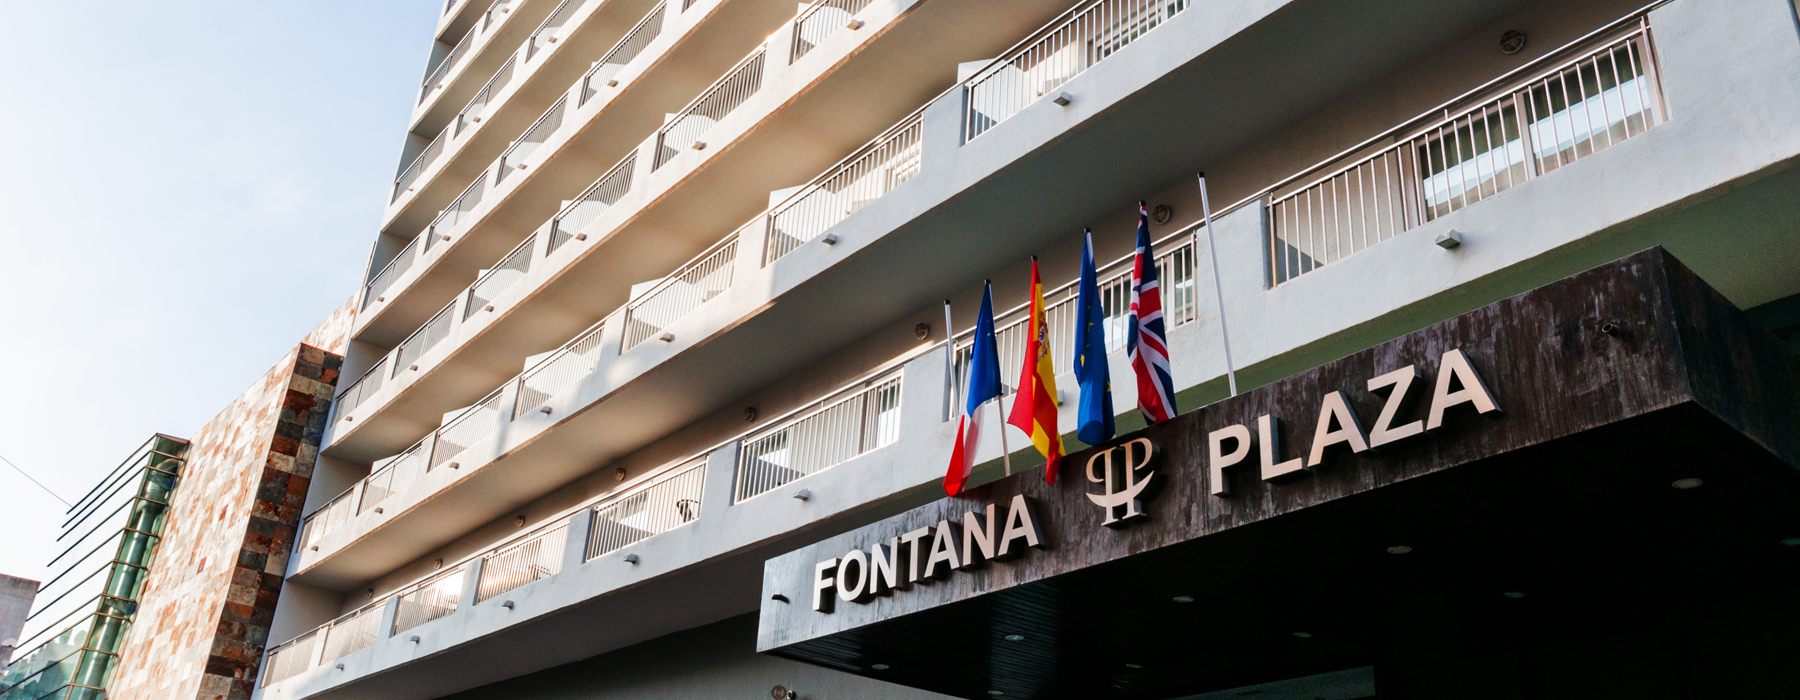 Hotel Fontana Plaza  header